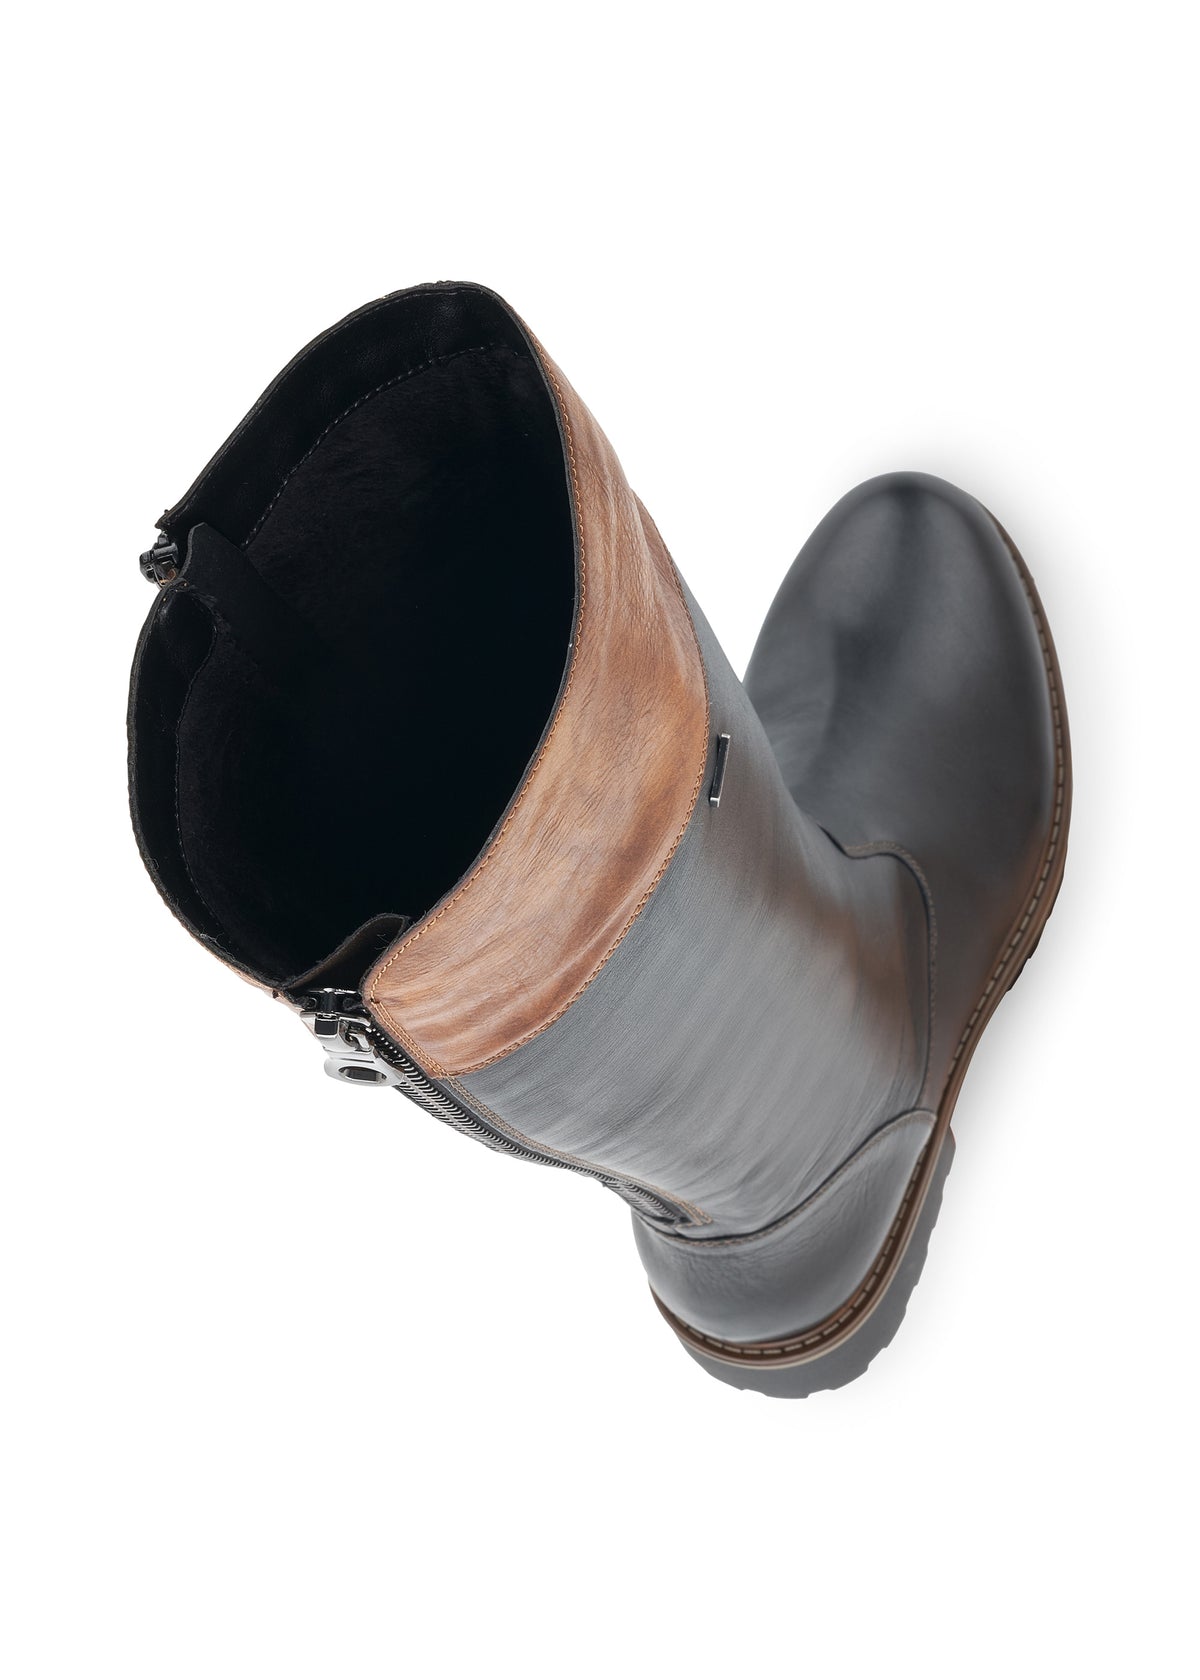 Boots - black, brown upper shaft, adjustable L-XL shaft